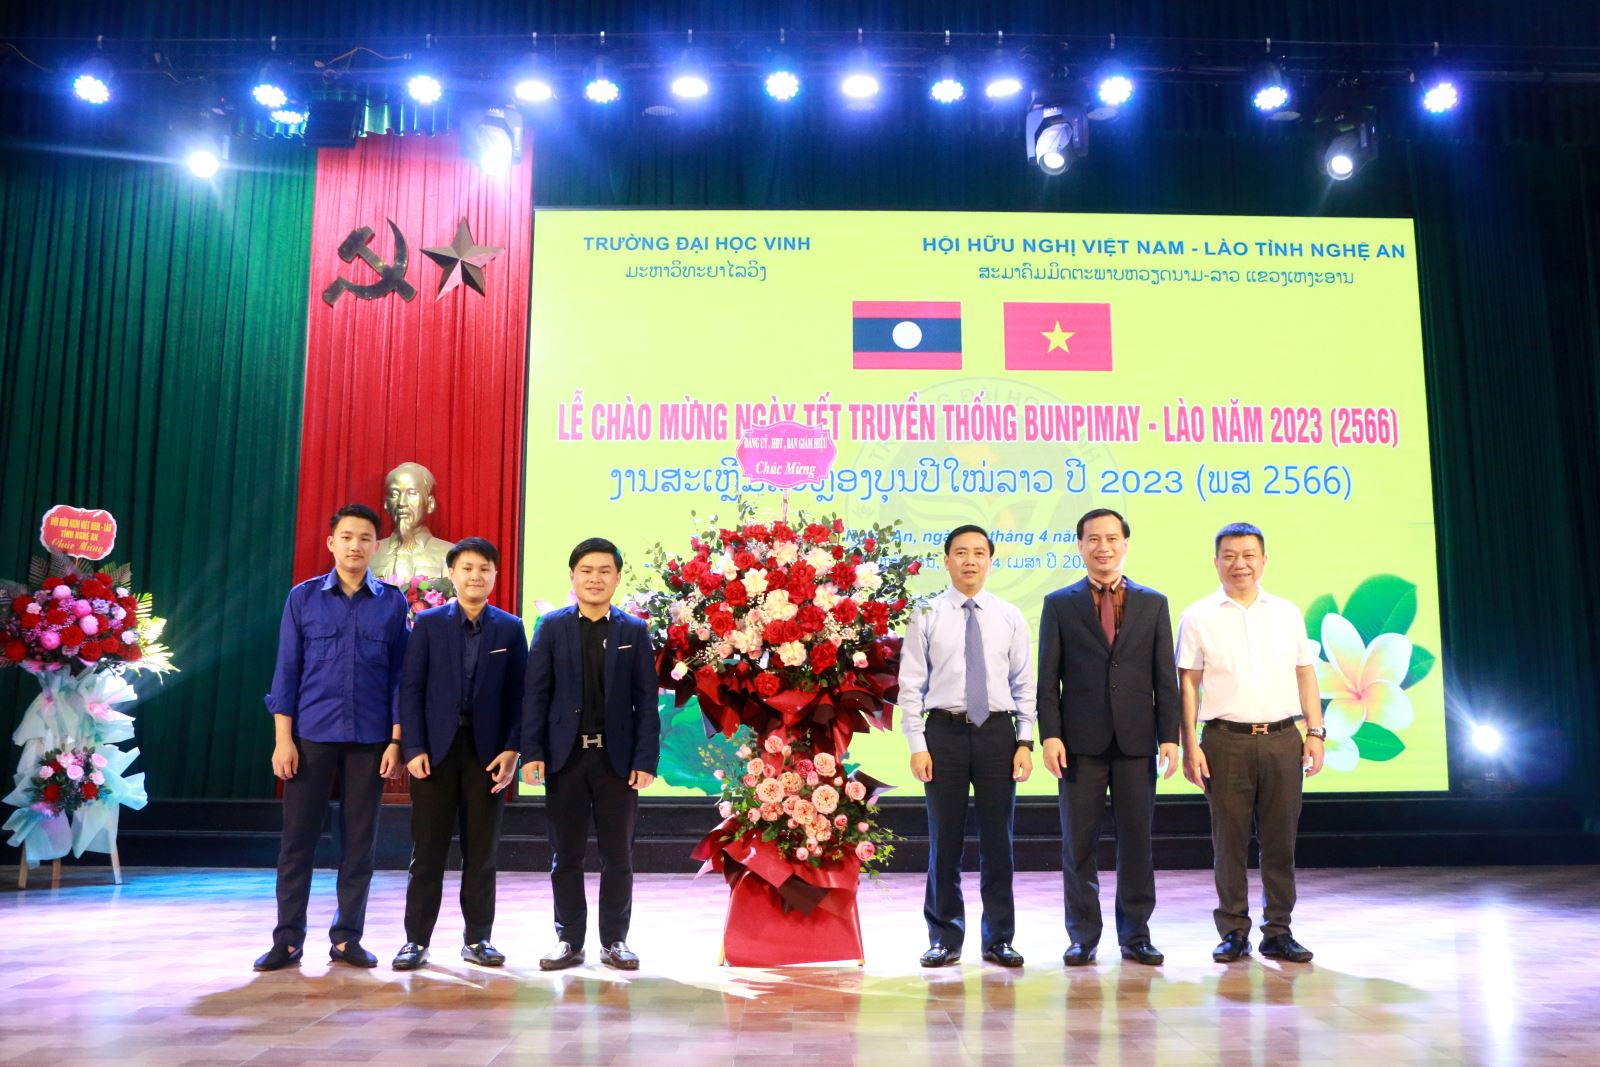 Trường Đại học Vinh tổ chức vui Tết Truyền thống Bunpimay năm 2023 (2566) cho lưu học sinh Lào